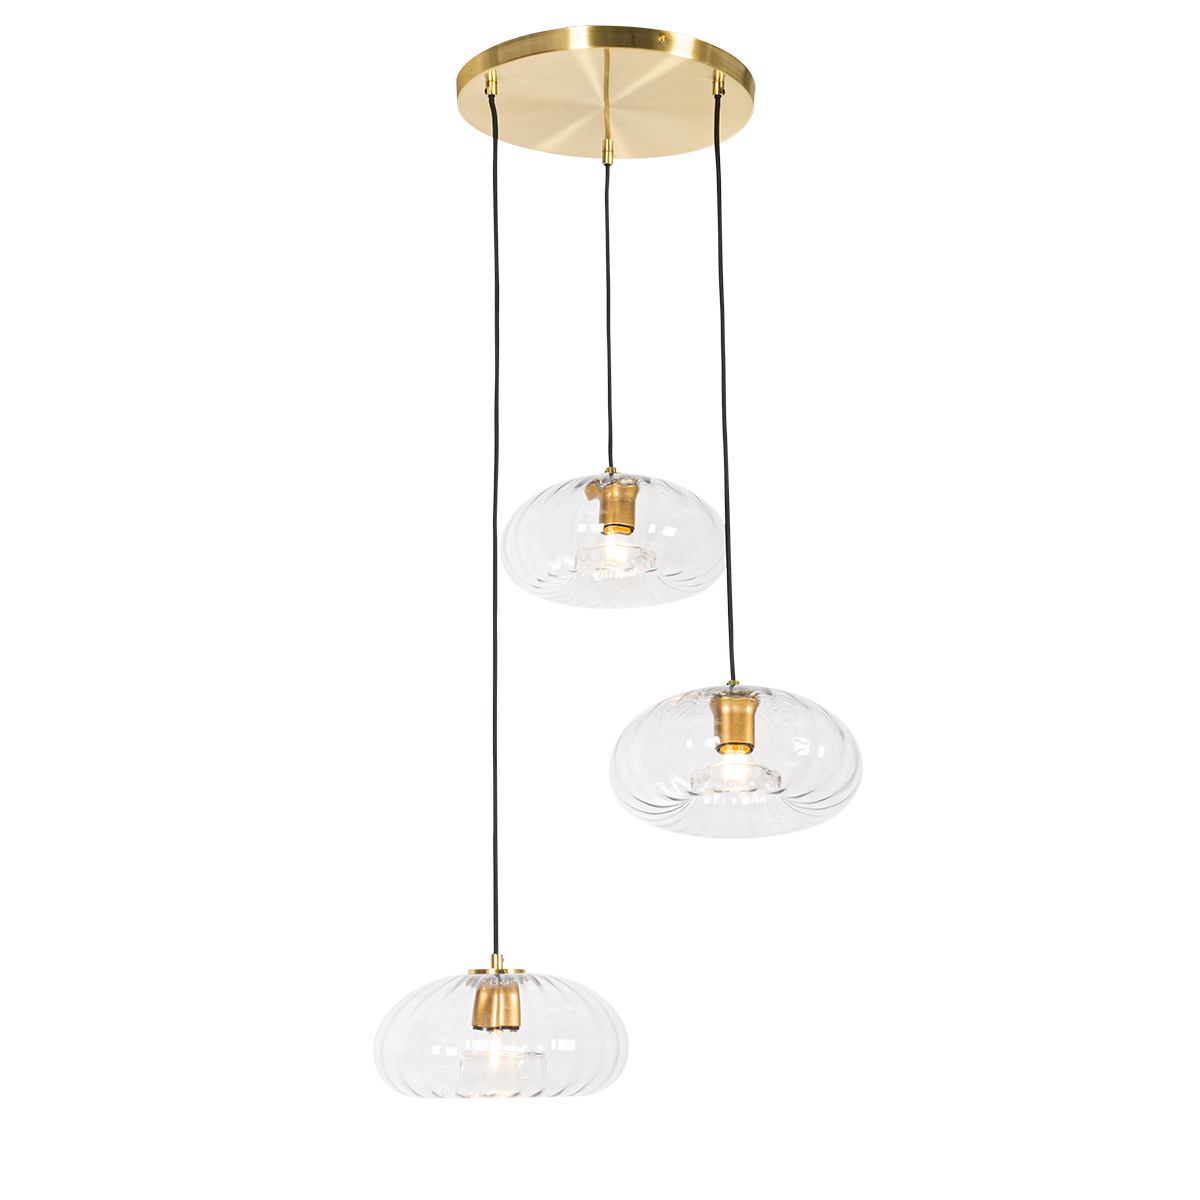 Art Deco függőlámpa arany, üveg kerek 3 lámpával - Ayesha